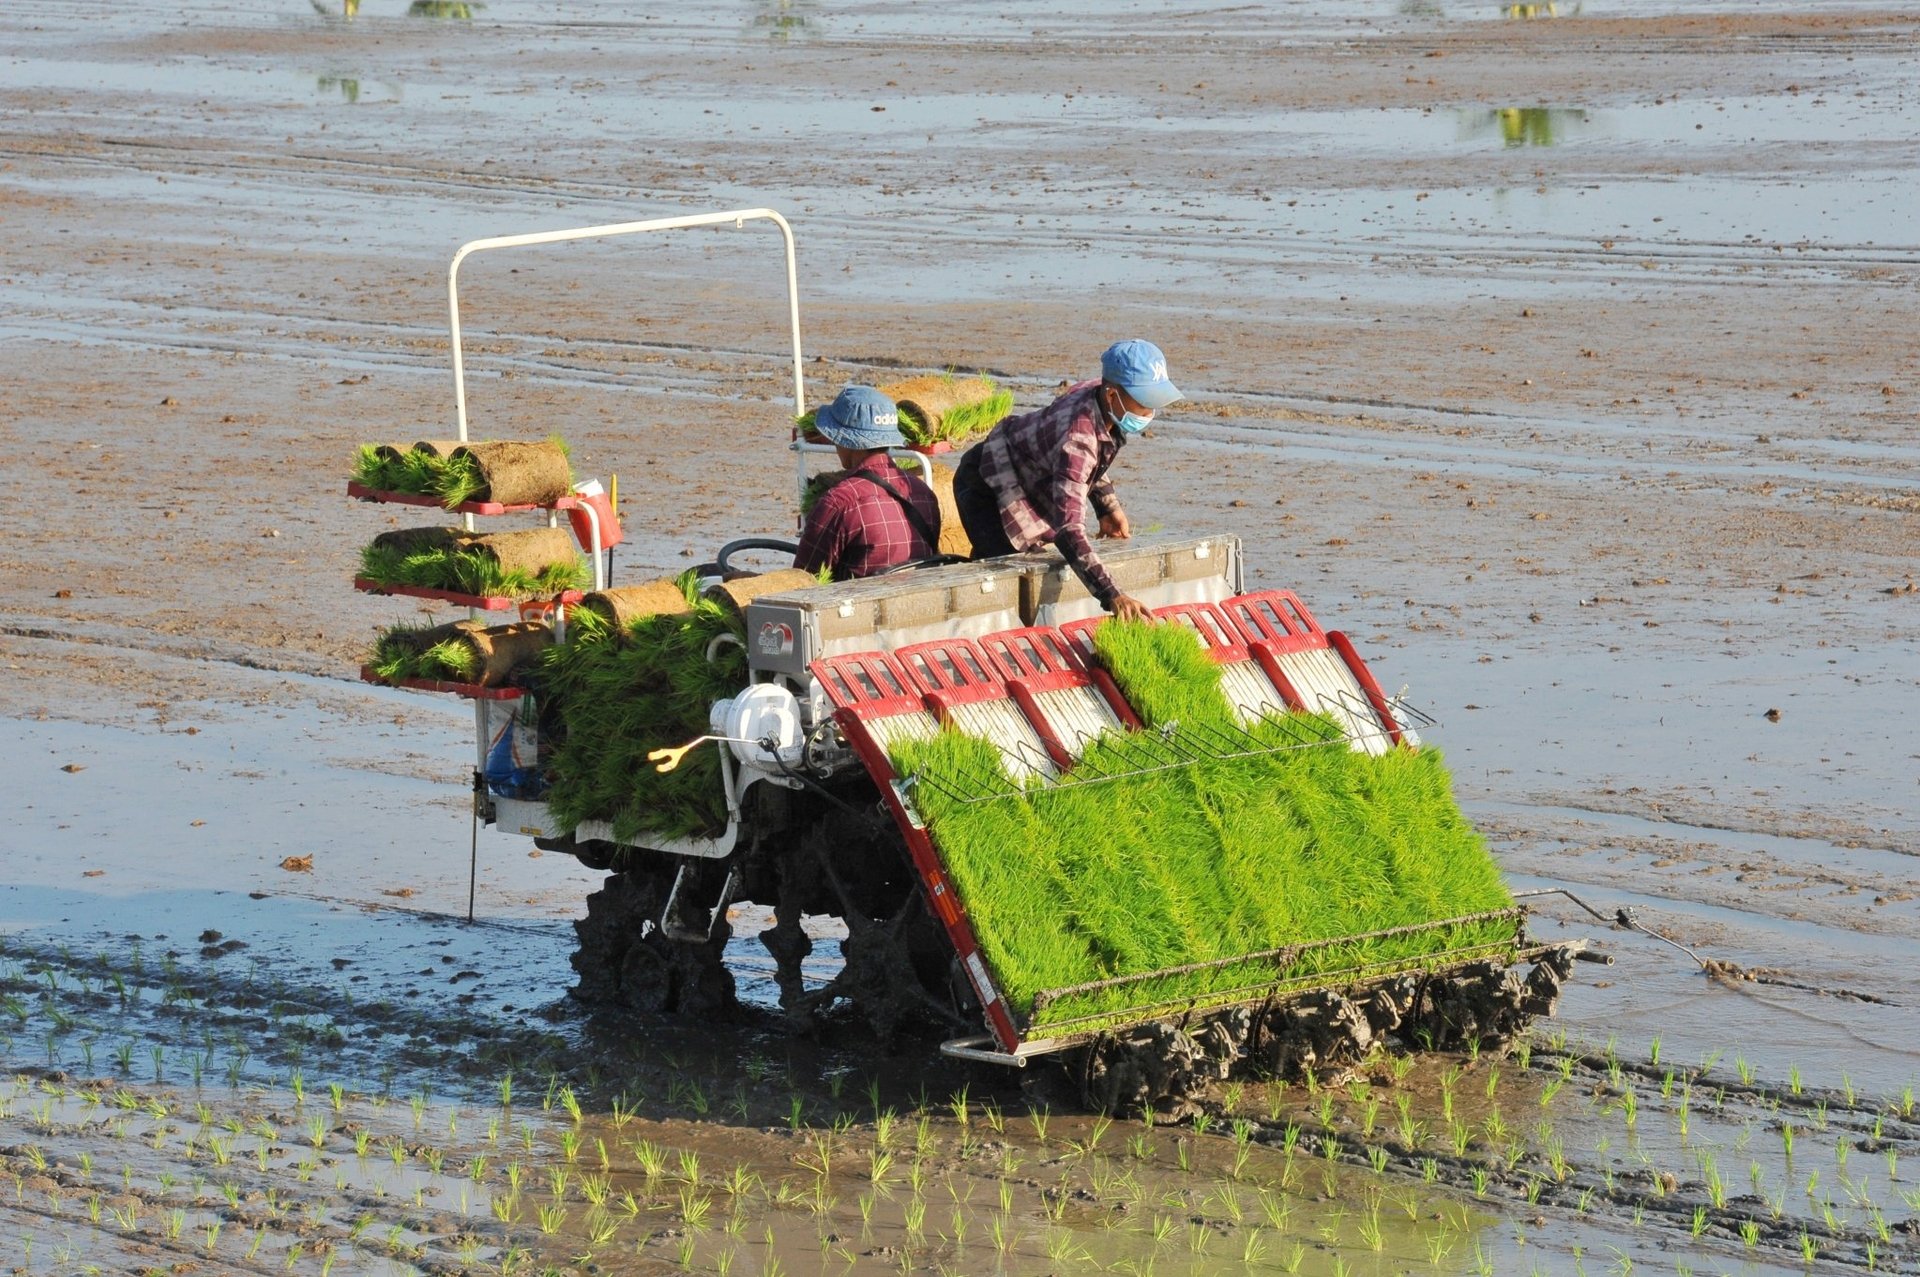 Nếu duy trì mức sản xuất như hiện nay và không xảy ra bão lũ, mất mùa trên diện rộng, Việt Nam sẽ đảm bảo các nhu cầu tiêu dùng trong nước và vẫn có thể xuất khẩu khoảng 6 triệu tấn gạo mỗi năm. Ảnh: Lê Hoàng Vũ.